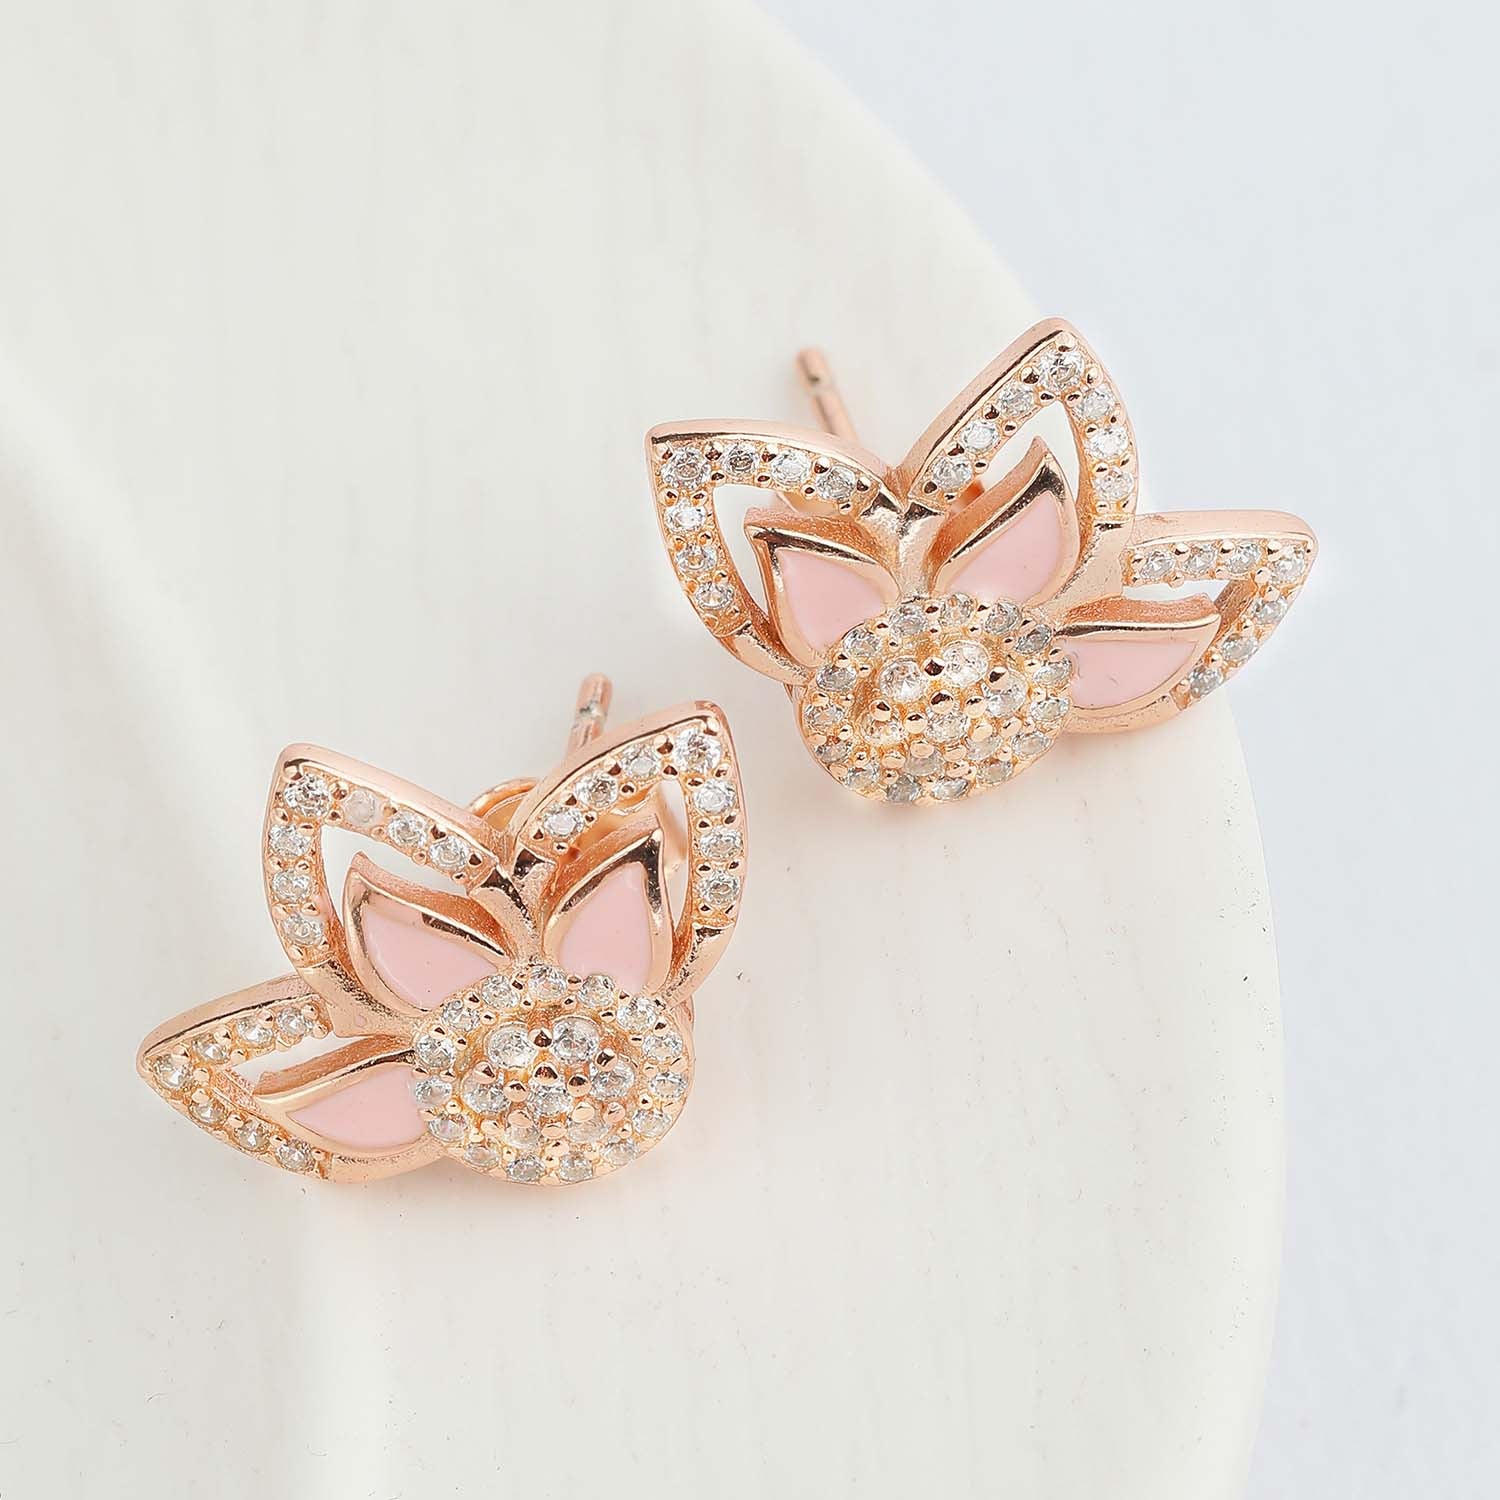 Petals in Pink 925 Silver Stud Earrings